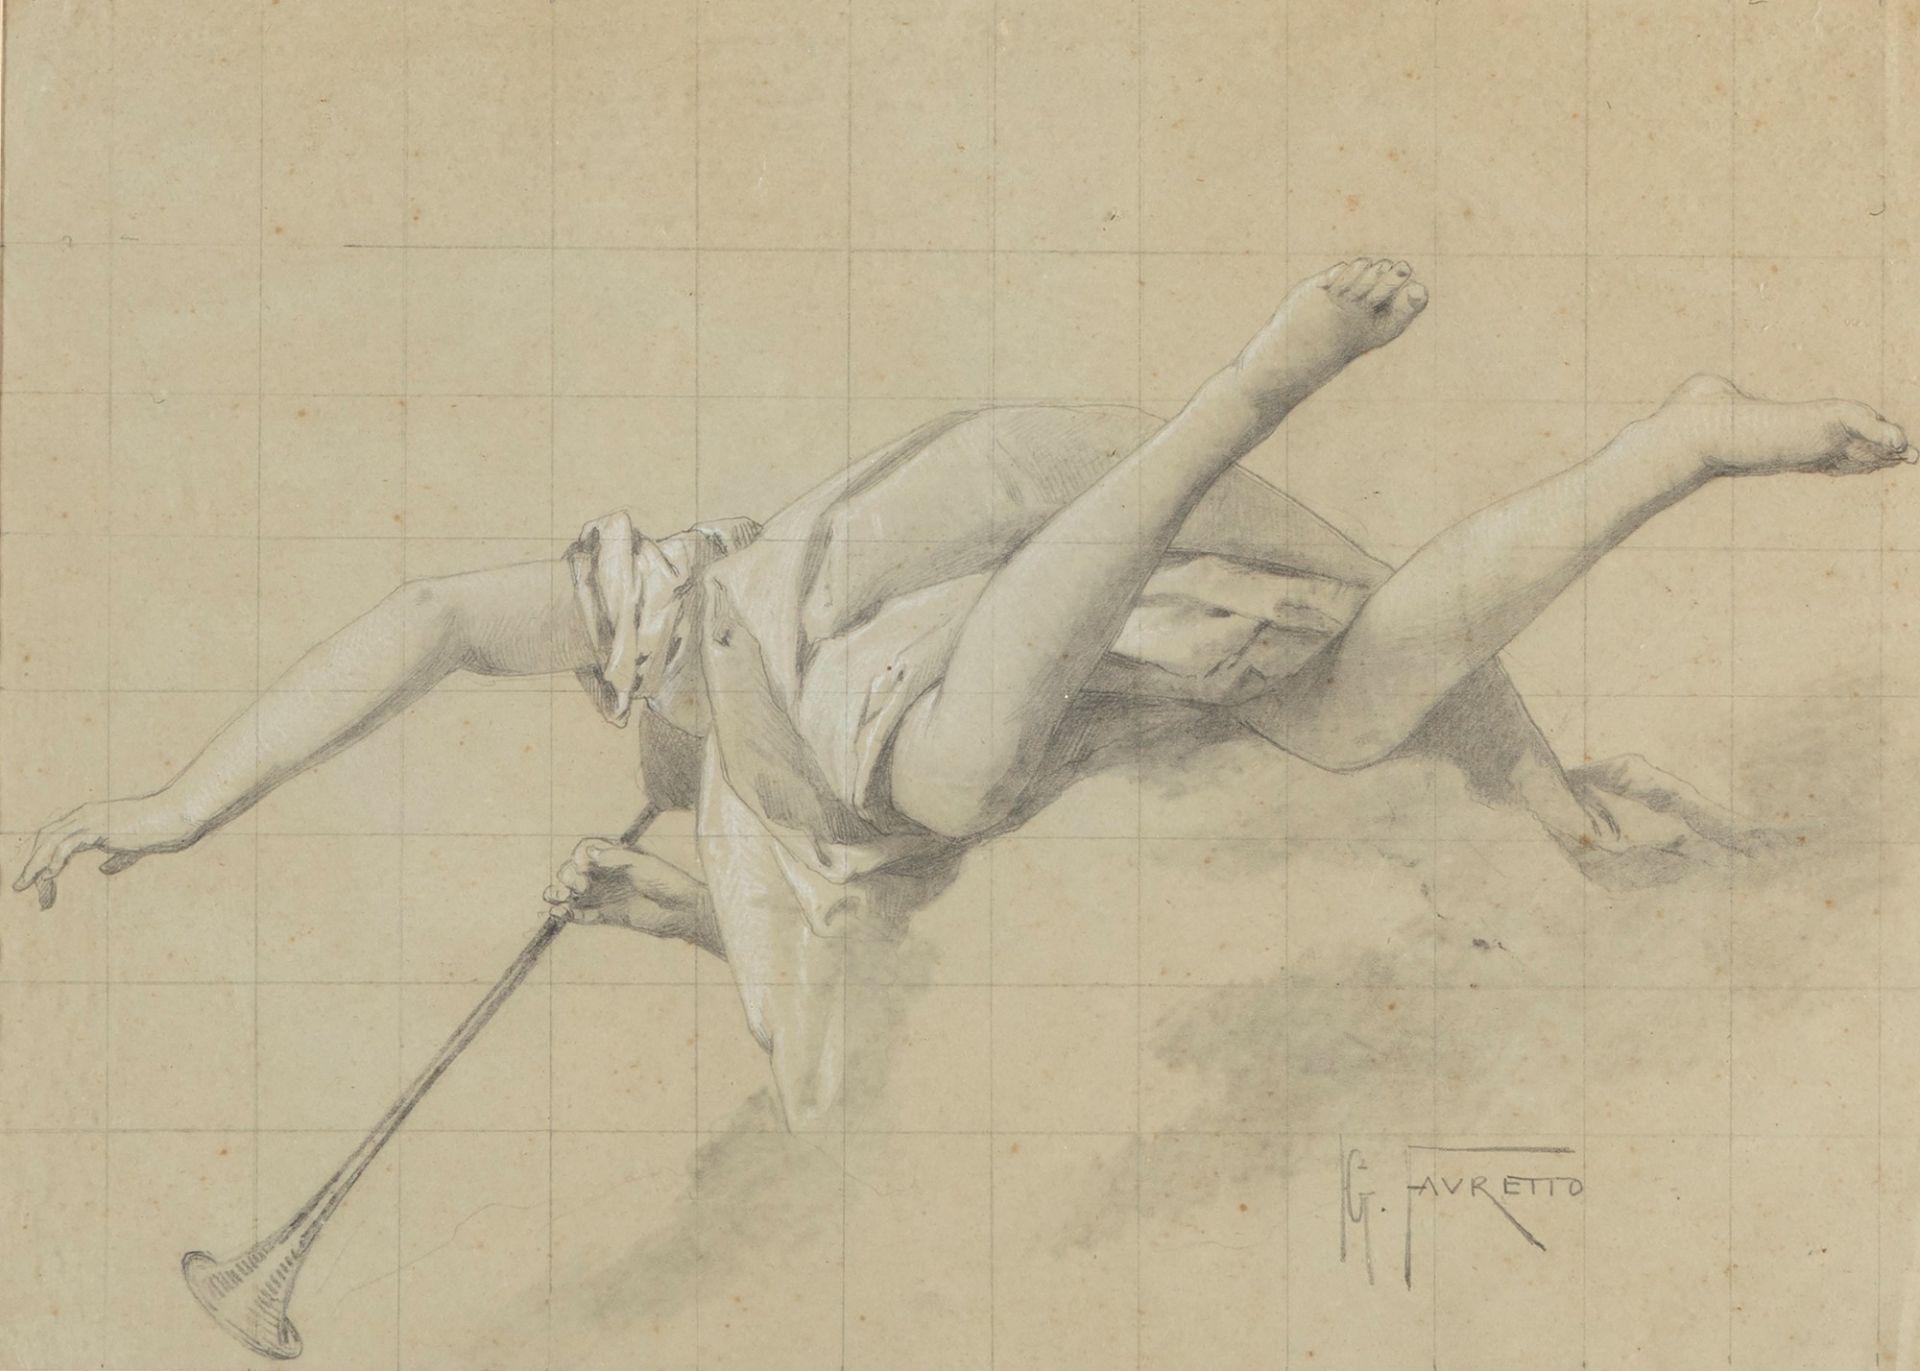 Giacomo Favretto (Venezia 1849-1887) - Study for the "Fame" by Giambattista Tiepolo